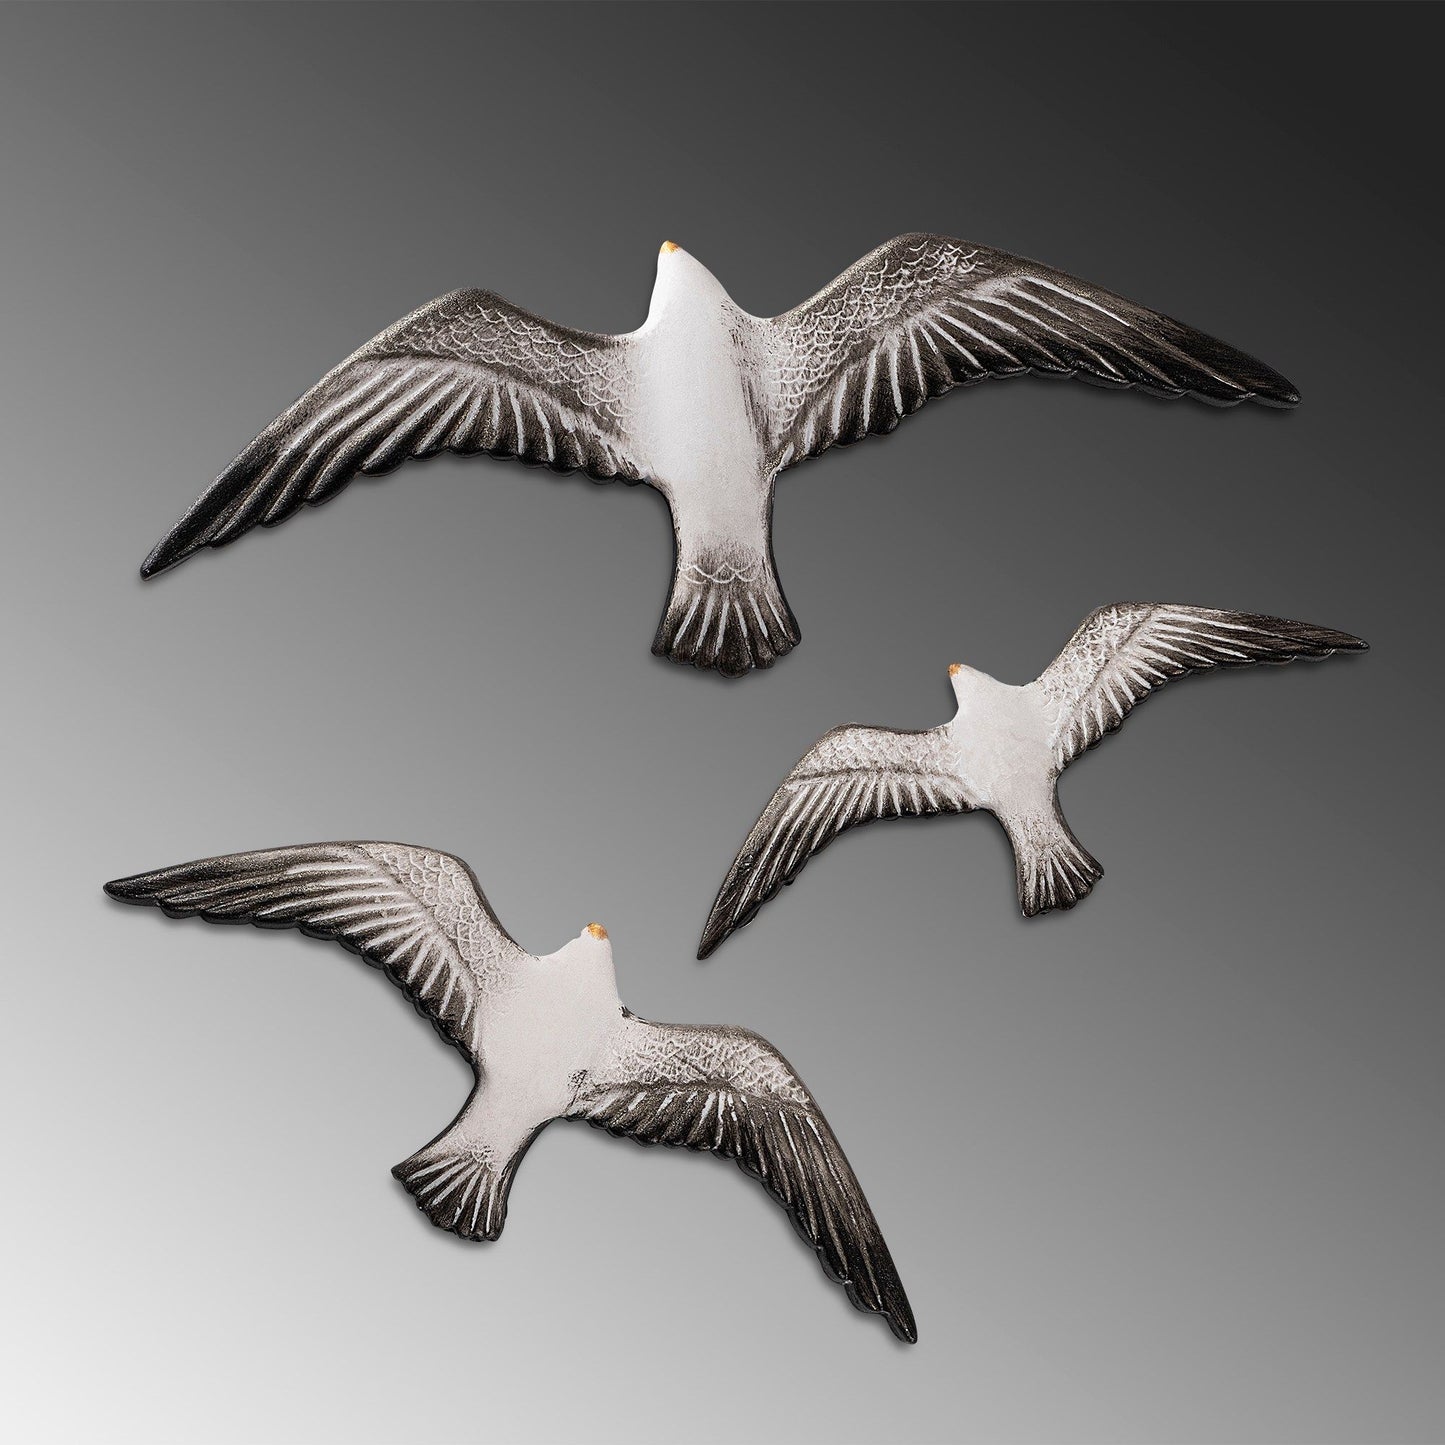 Flying Seagulls - 2 - Dekorativt vægtilbehør